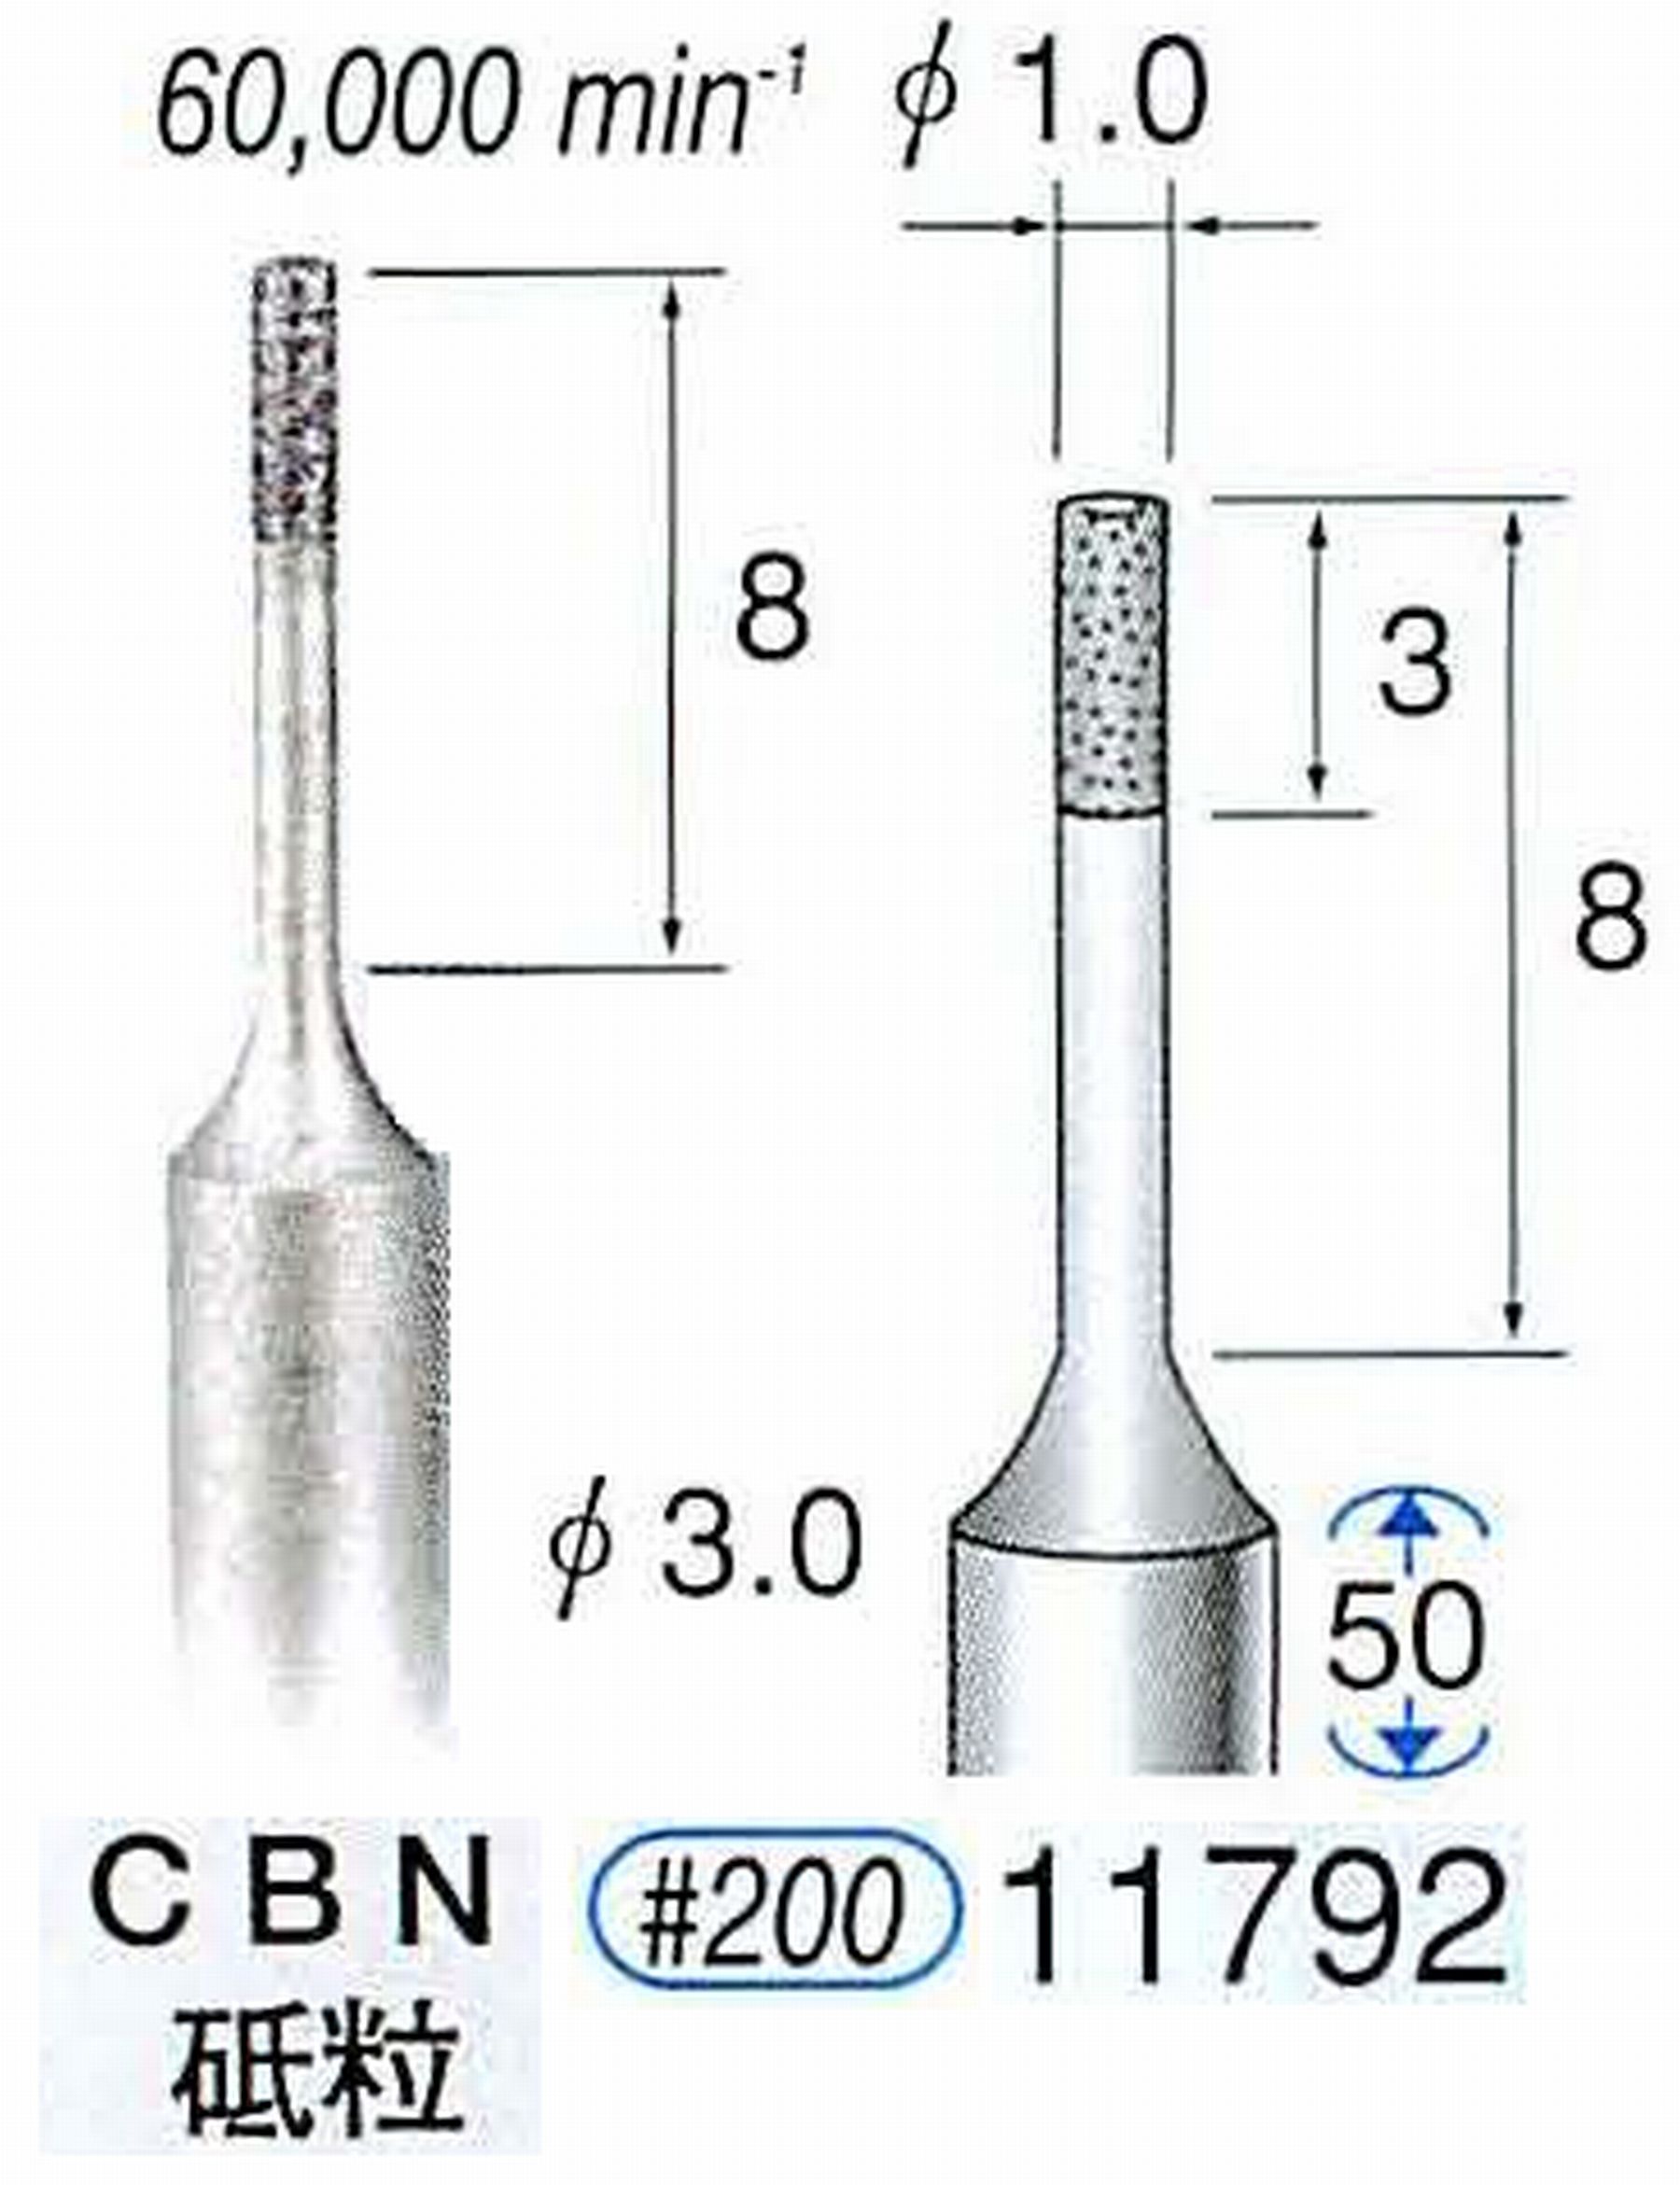 ナカニシ/NAKANISHI SP電着CBNバー CBN砥粒 軸径(シャンク)φ3.0mm 11792